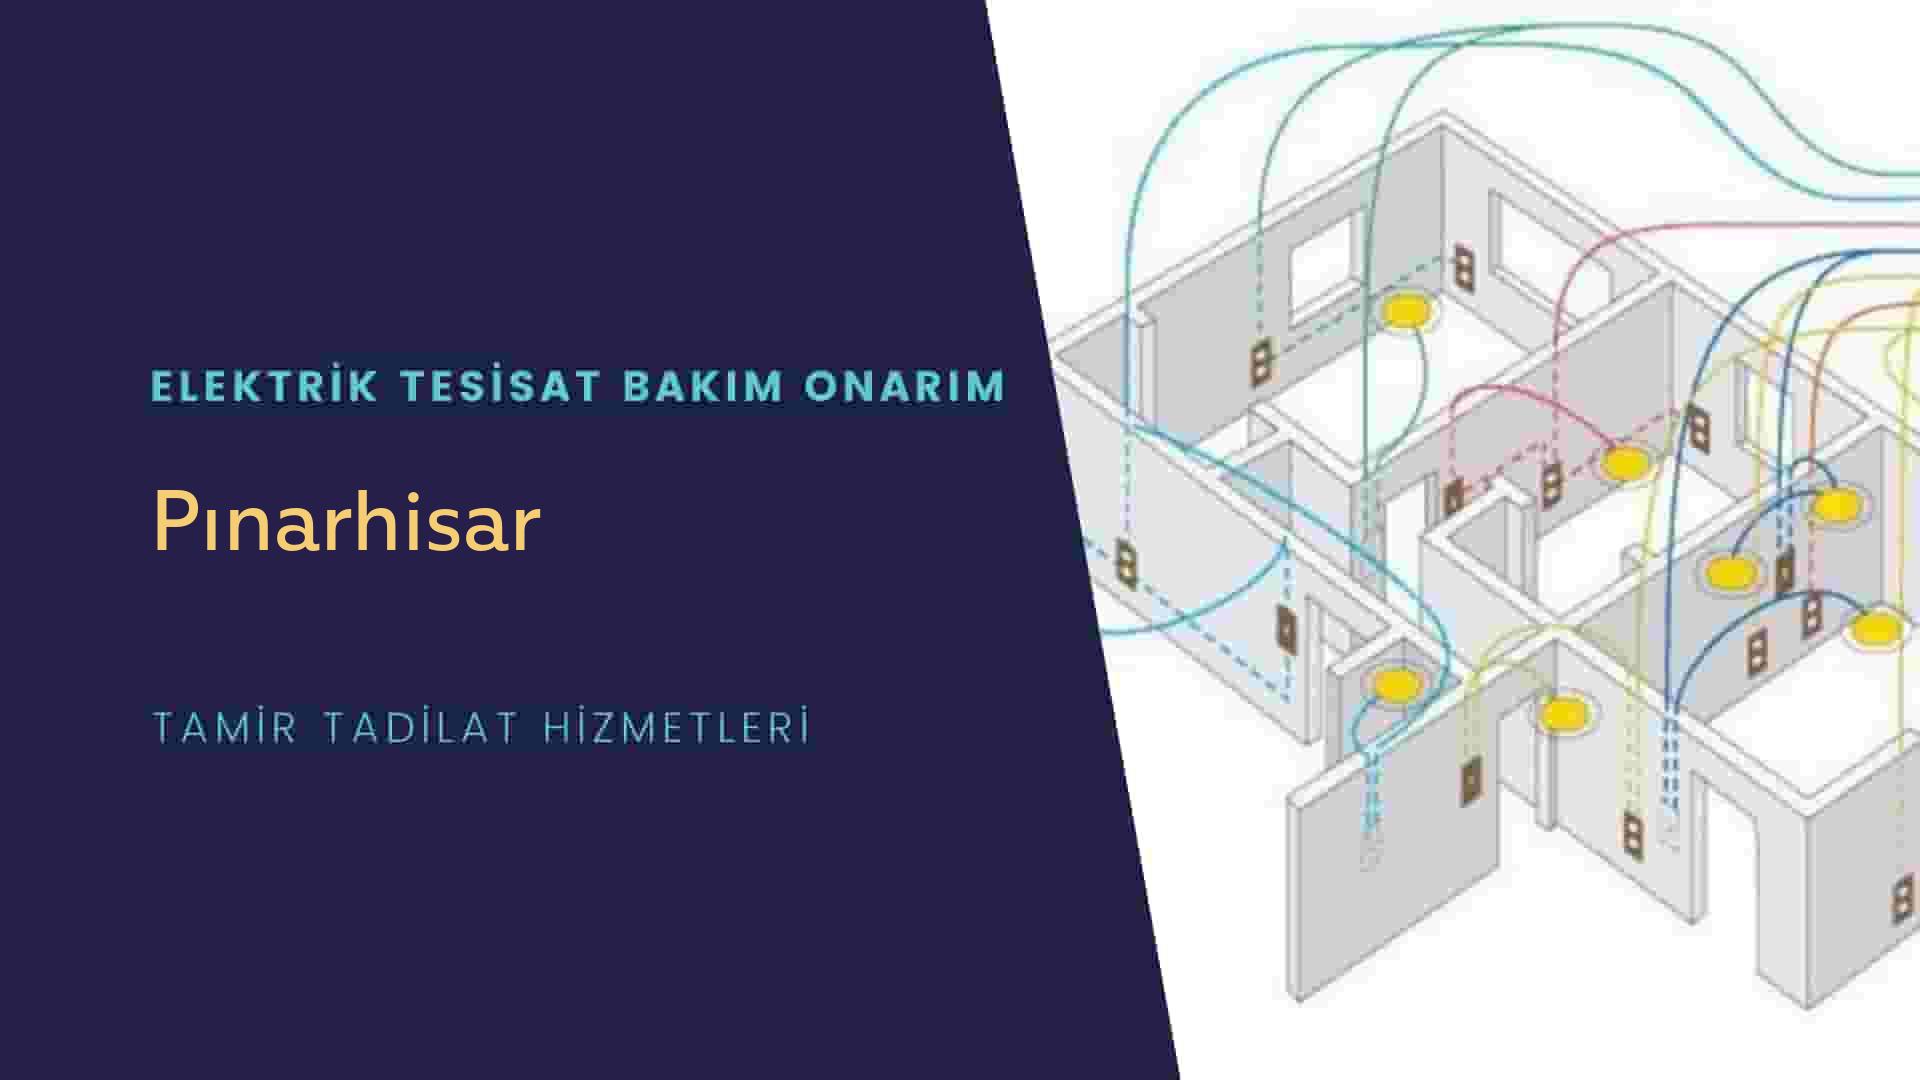 Pınarhisar'da elektrik tesisatı ustalarımı arıyorsunuz doğru adrestenizi Pınarhisar elektrik tesisatı ustalarımız 7/24 sizlere hizmet vermekten mutluluk duyar.